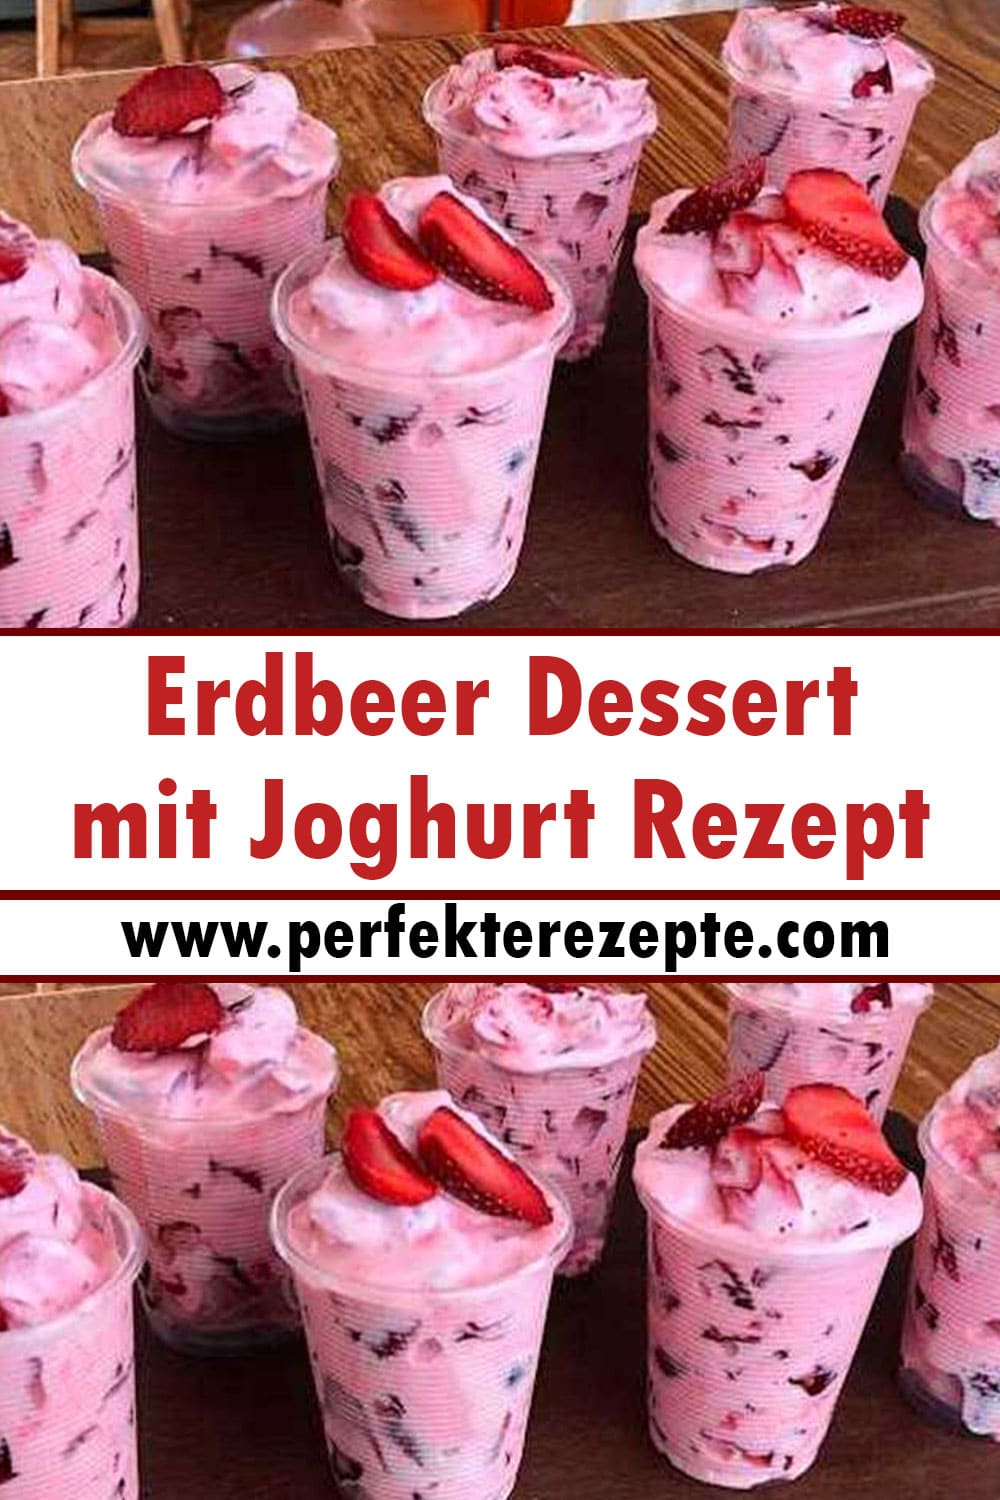 Erdbeer Dessert mit Joghurt Rezept in paar Minuten fertig